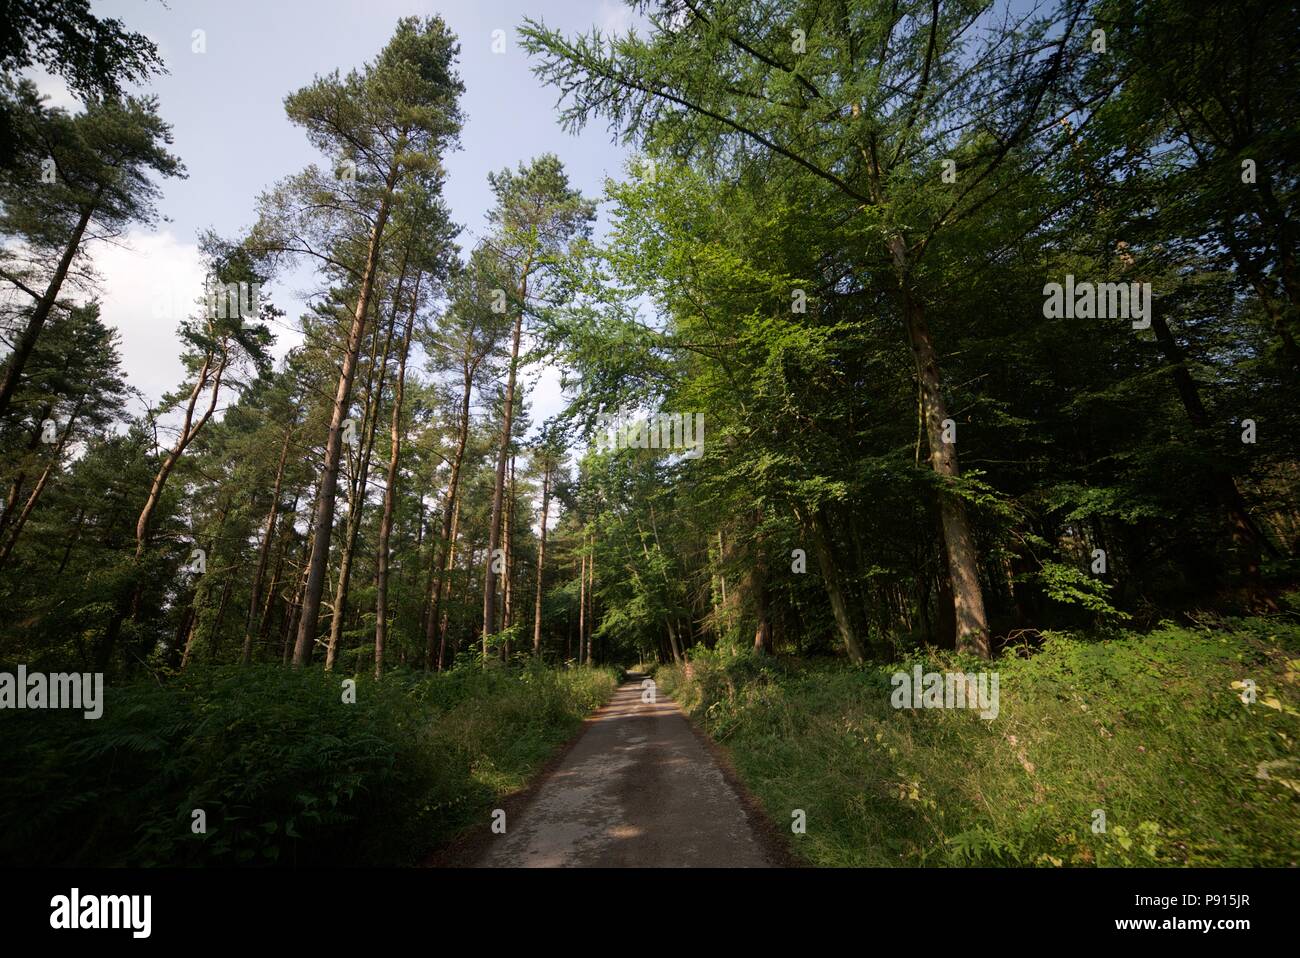 Un percorso sterrato che conduce attraverso un bosco di conifere / foresta / plantation in una giornata di sole con un cielo chiaro. Alberi di pino. Foto Stock